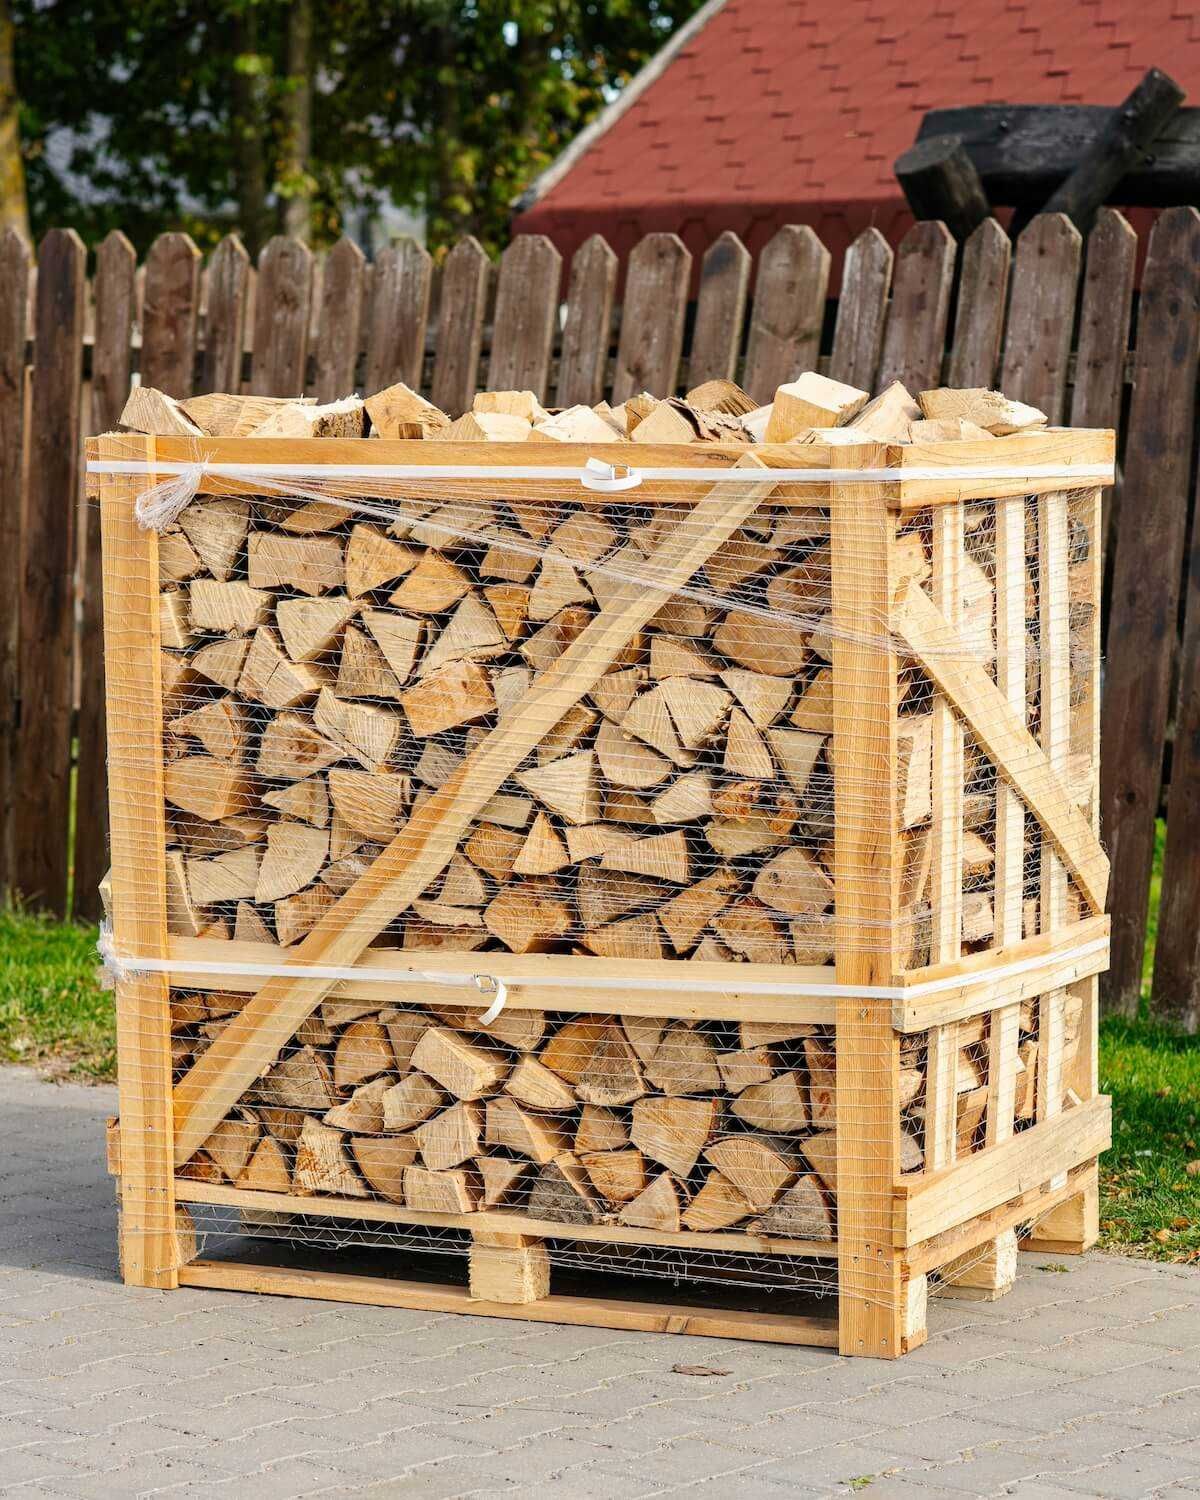 Drewno kominkowe suszone komorowo Biofire – Łódź i okolice